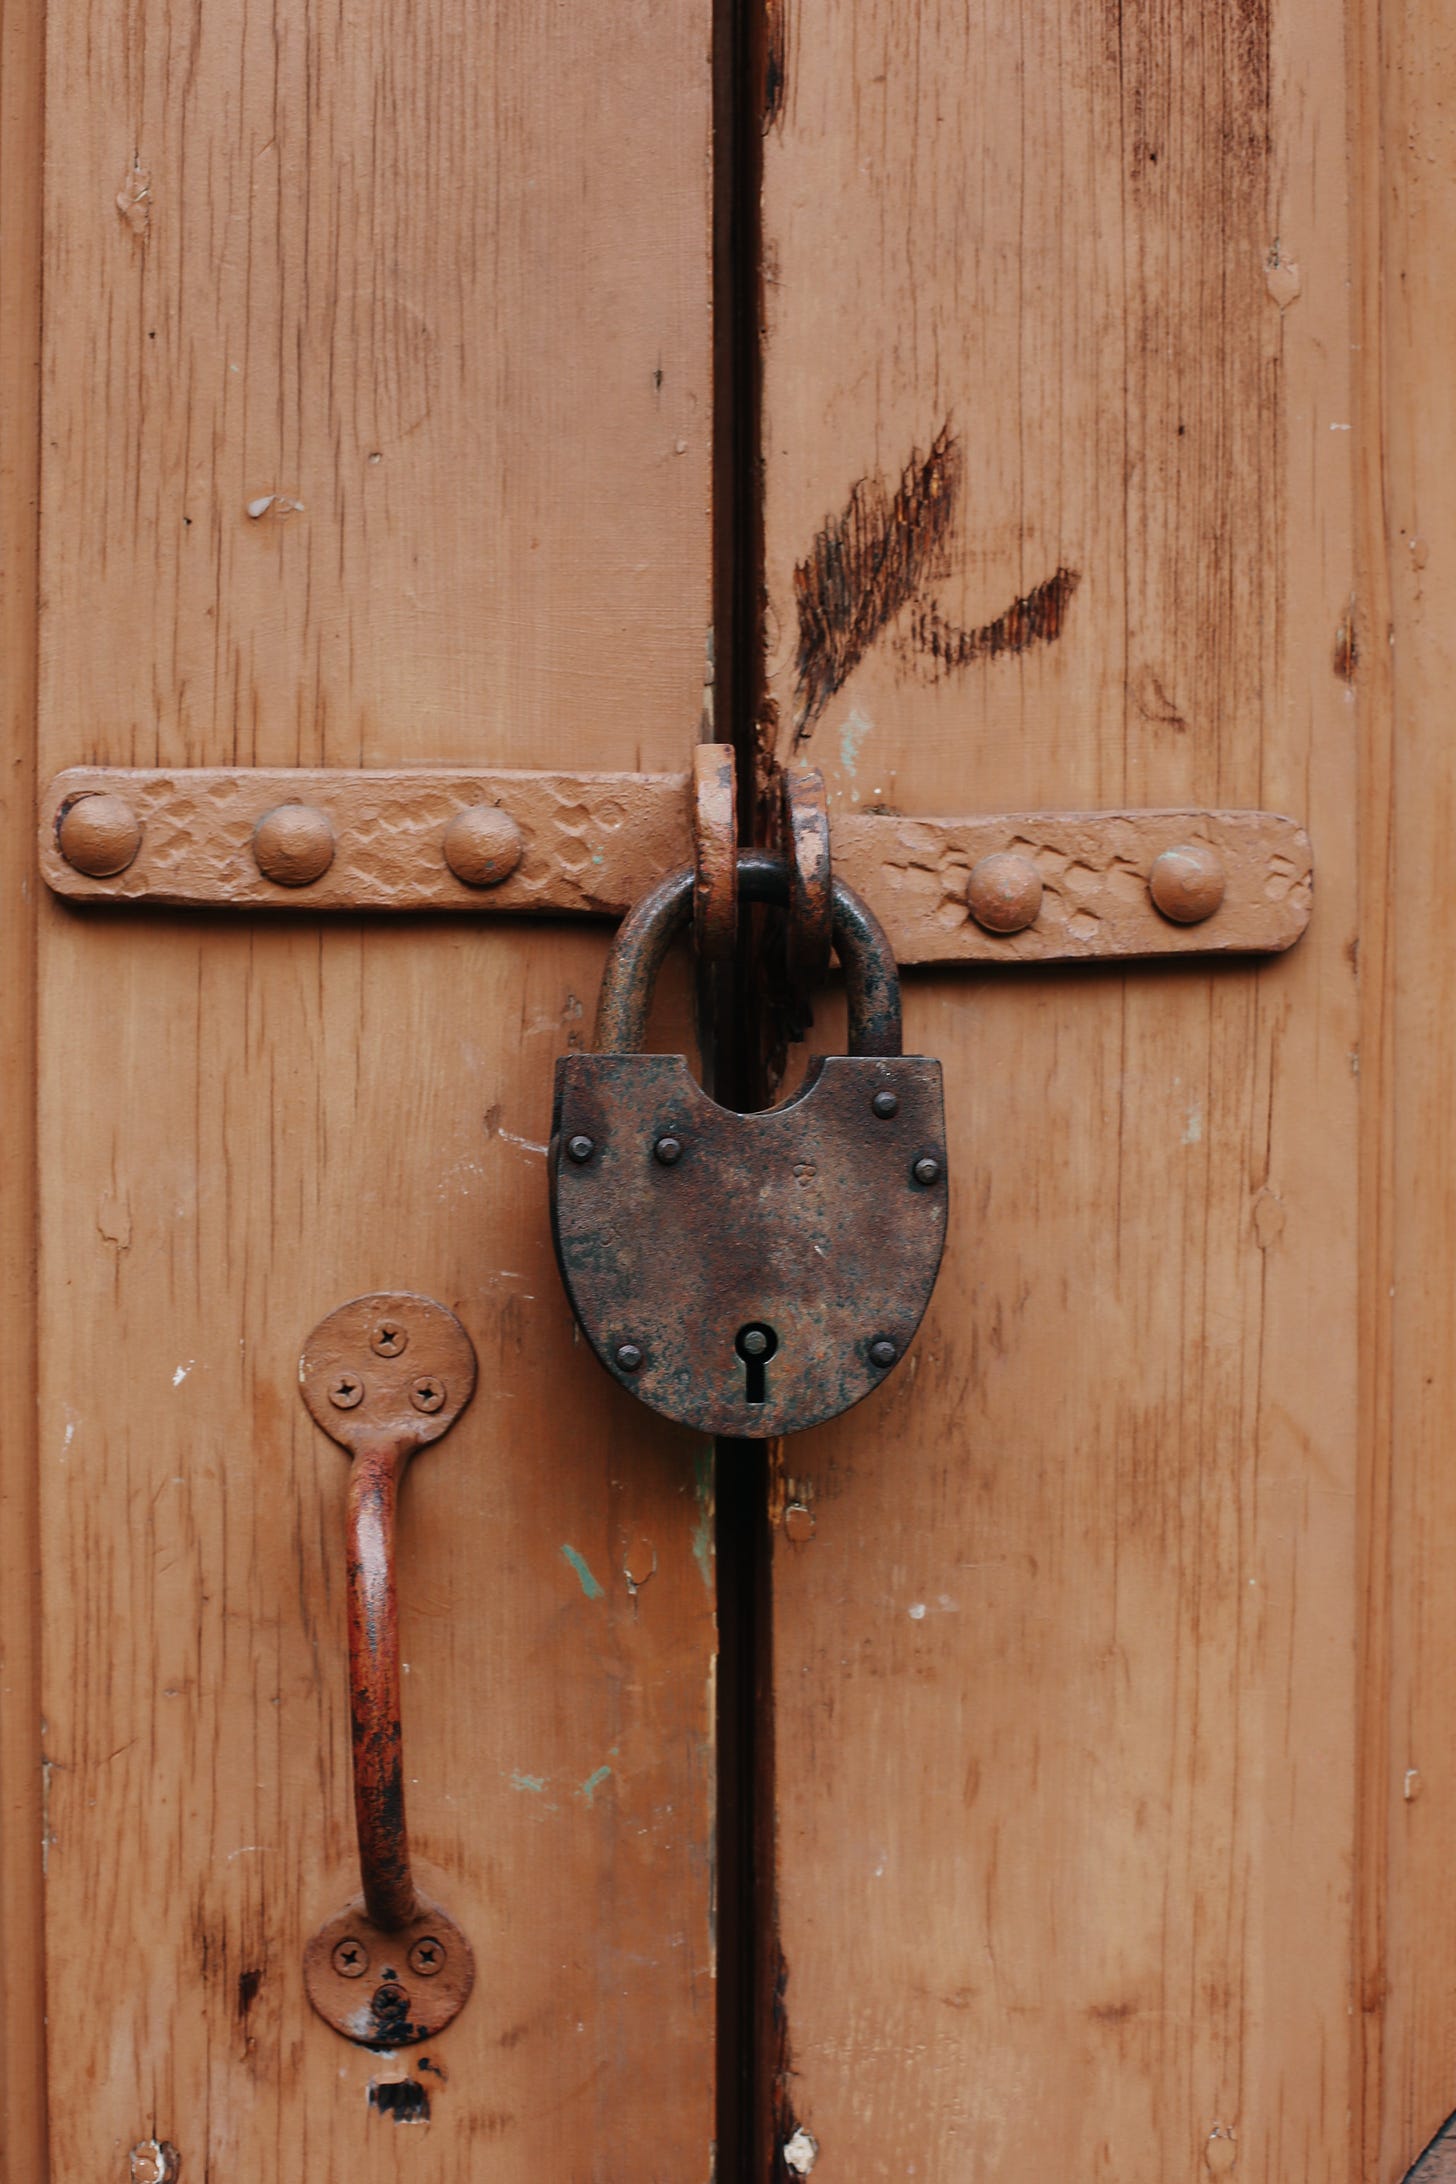 wooden door with a padlock